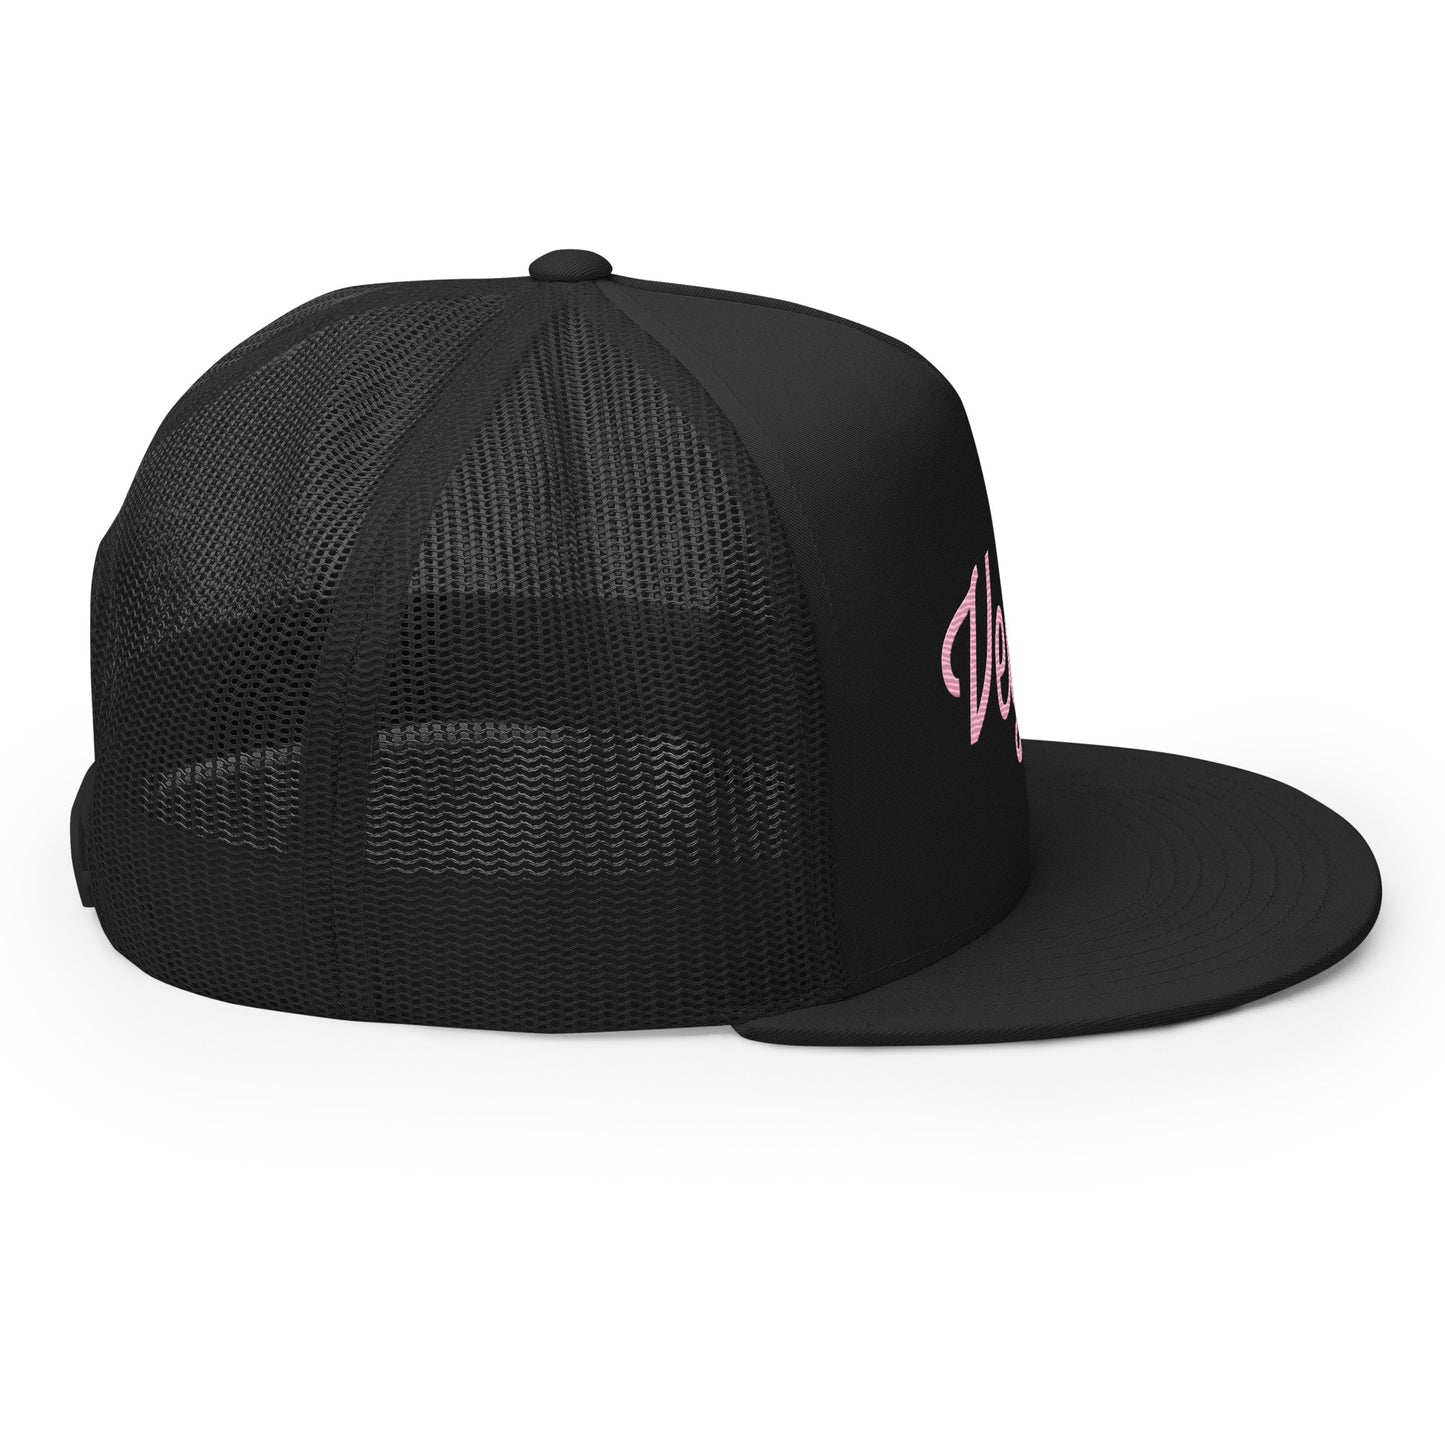 The deluxe pink Vegan hat